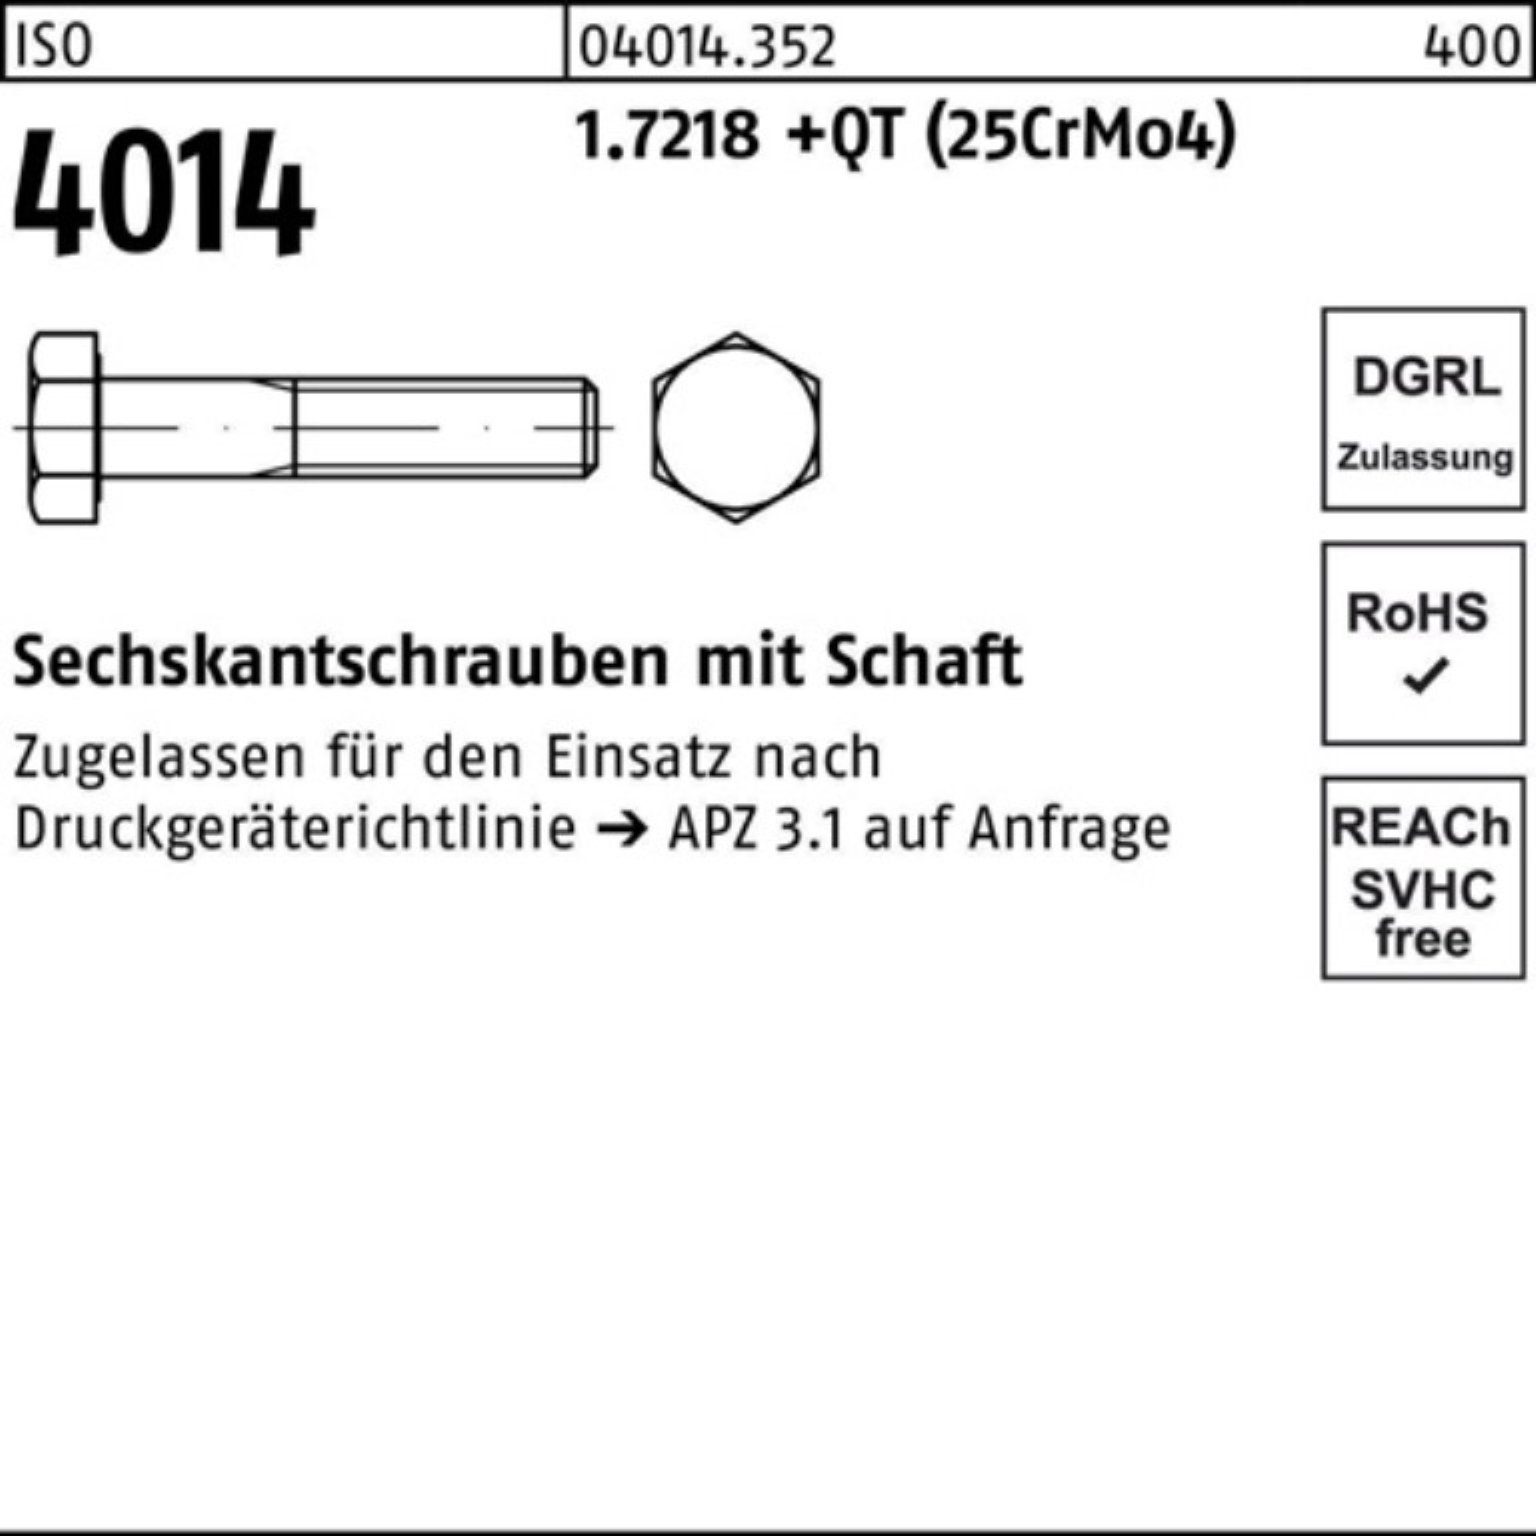 Bufab Sechskantschraube 4014 +QT Sechskantschraube ISO Schaft Pack 160 M33x (25Cr 1.7218 100er